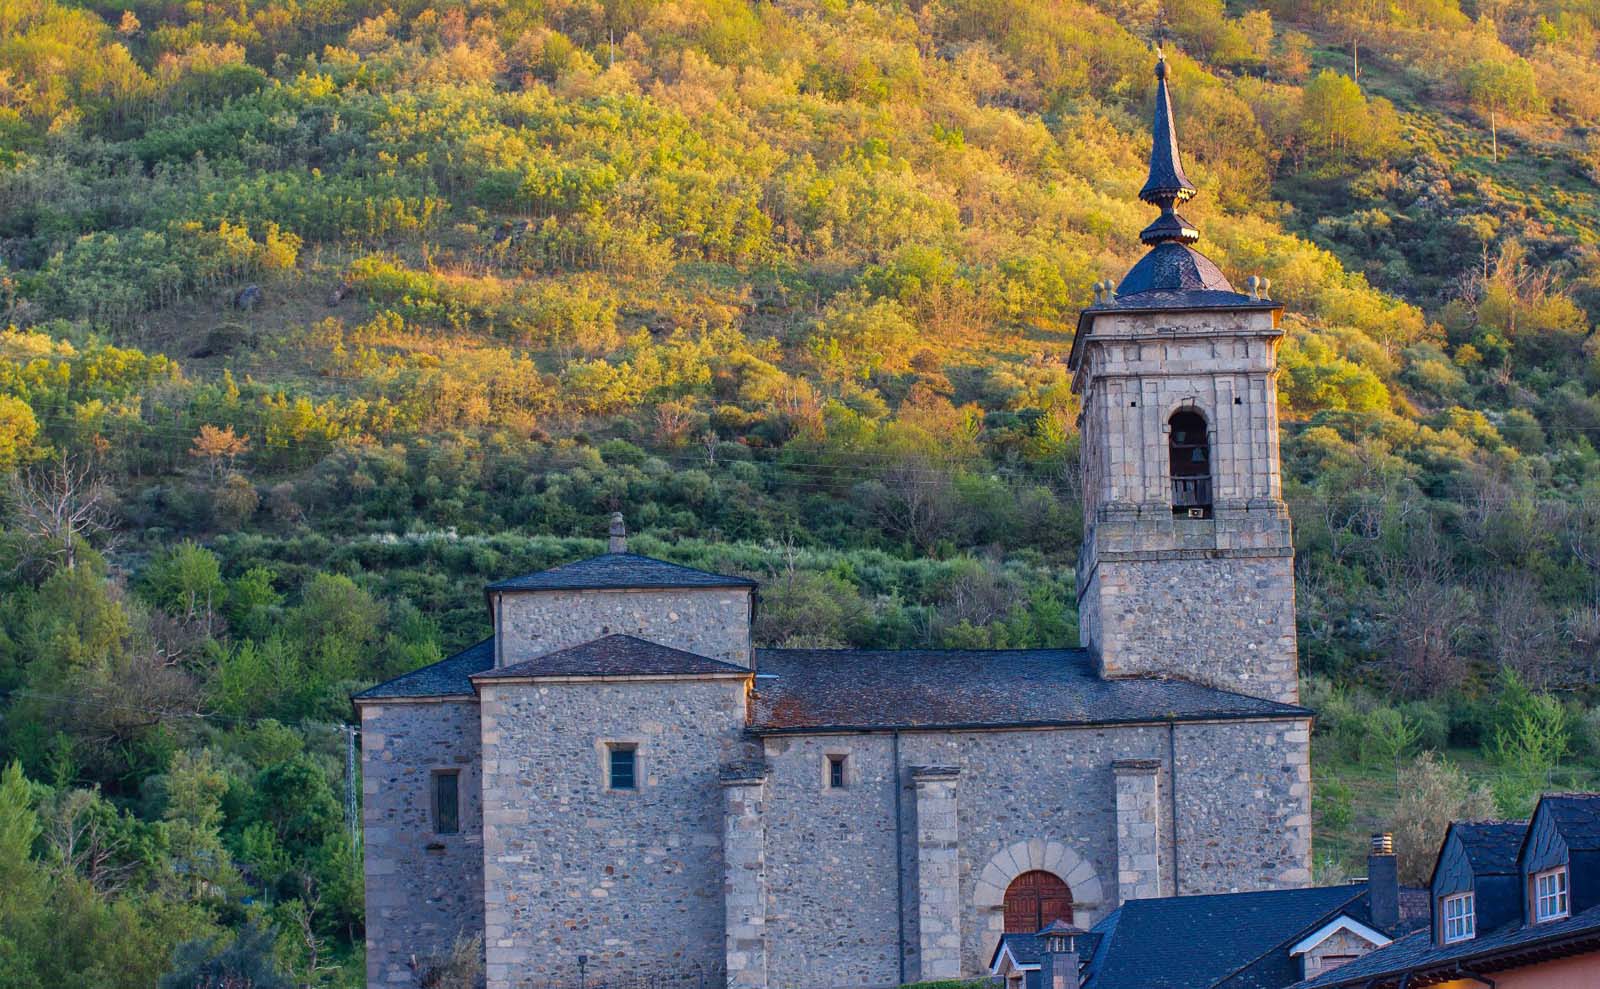 Que hacer y ver en el Bierzo. 27 planes para disfrutar de la comarca del Bierzo, turismo y ocio 19